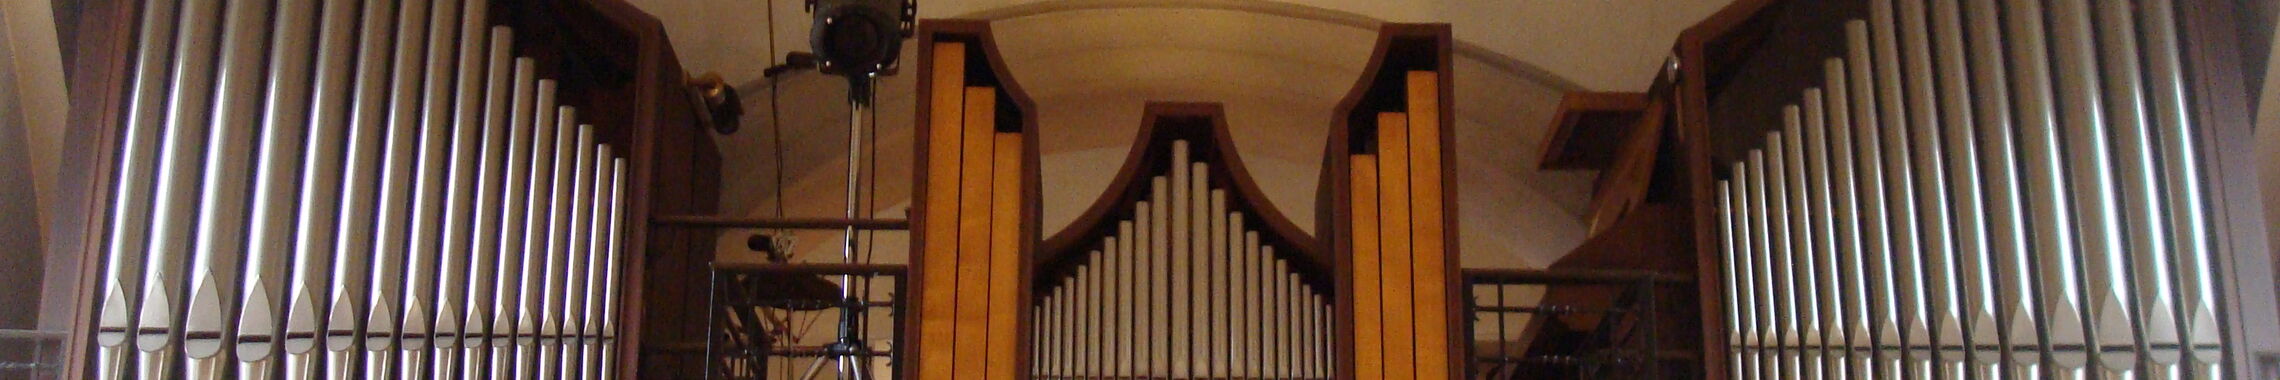 Orgel-Marien